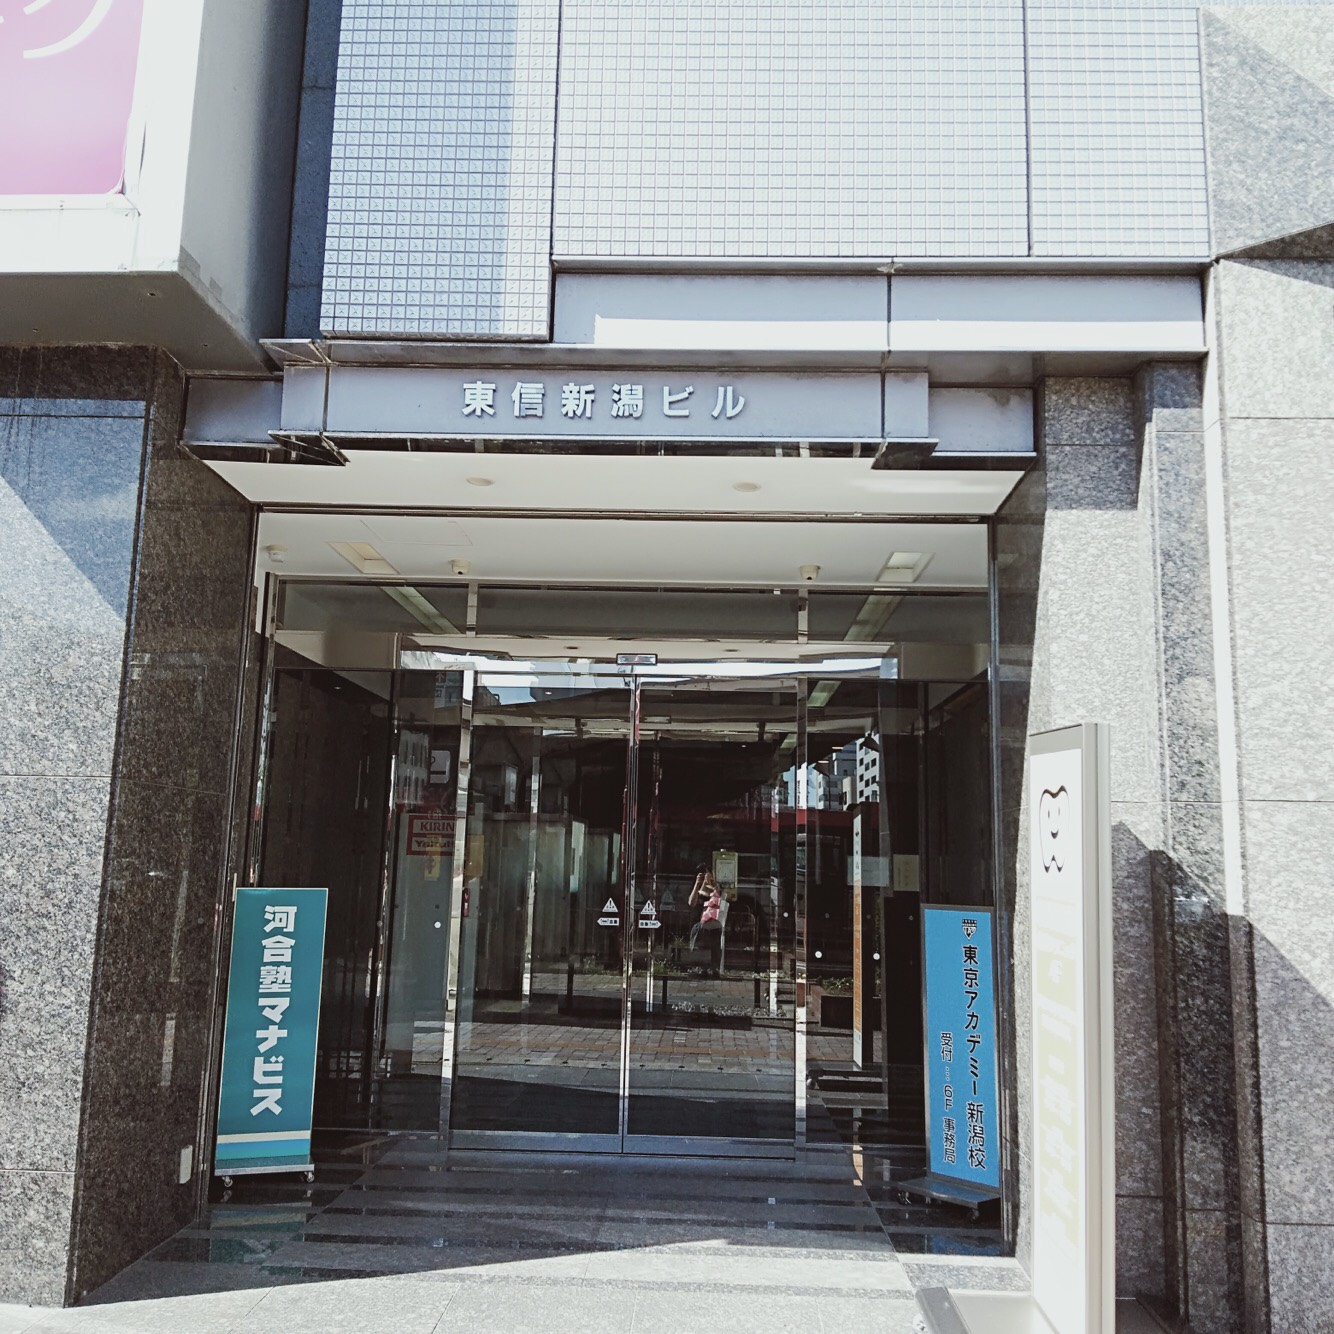 6.東信新潟ビル3階になります。